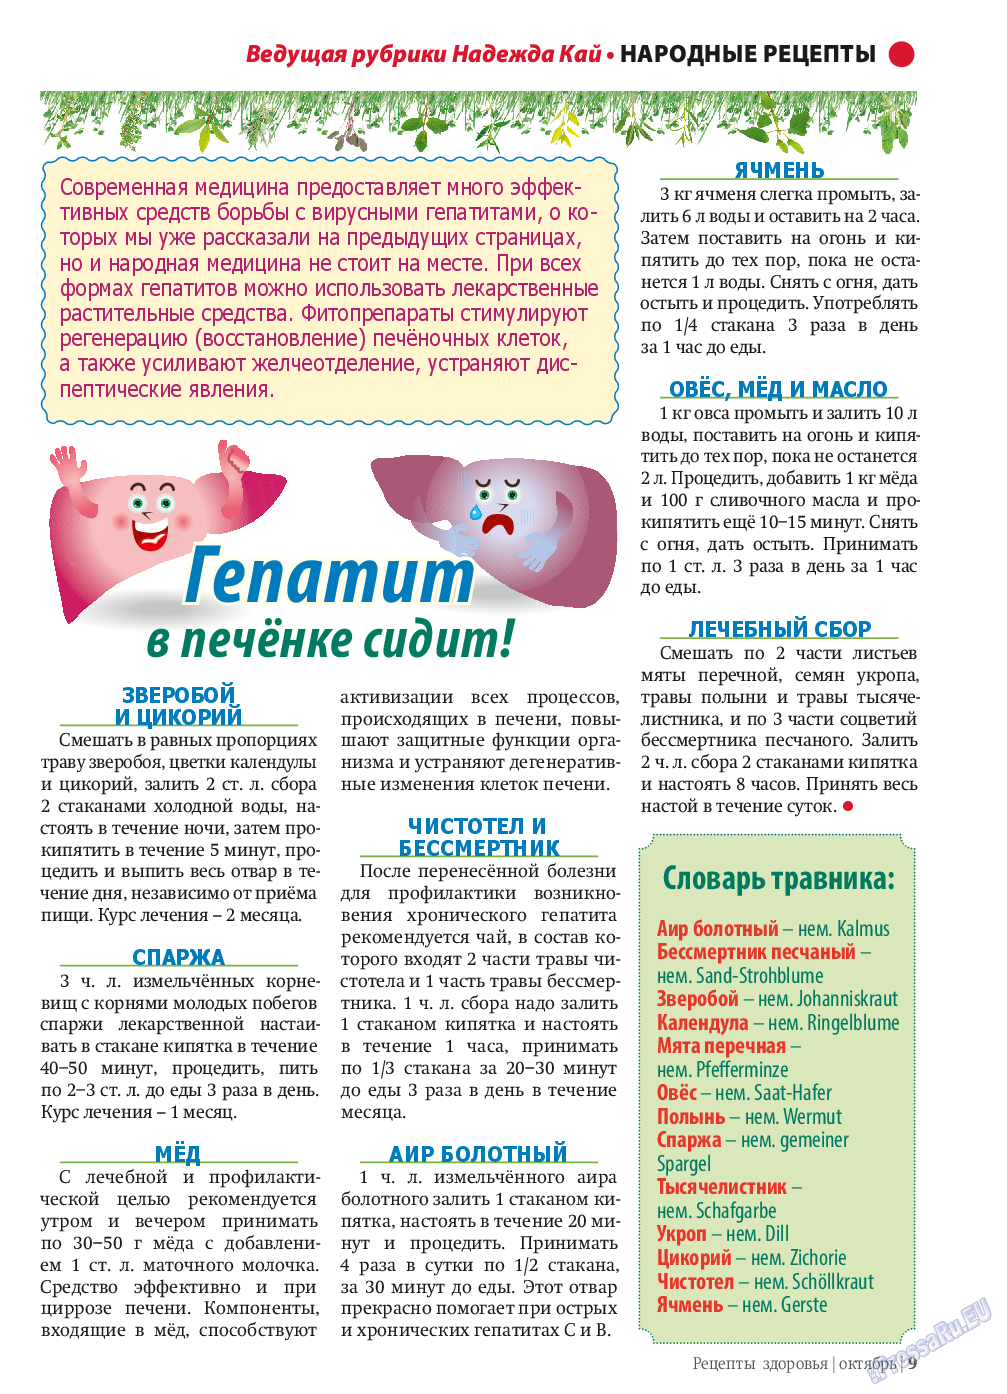 Рецепты здоровья (журнал). 2013 год, номер 10, стр. 9